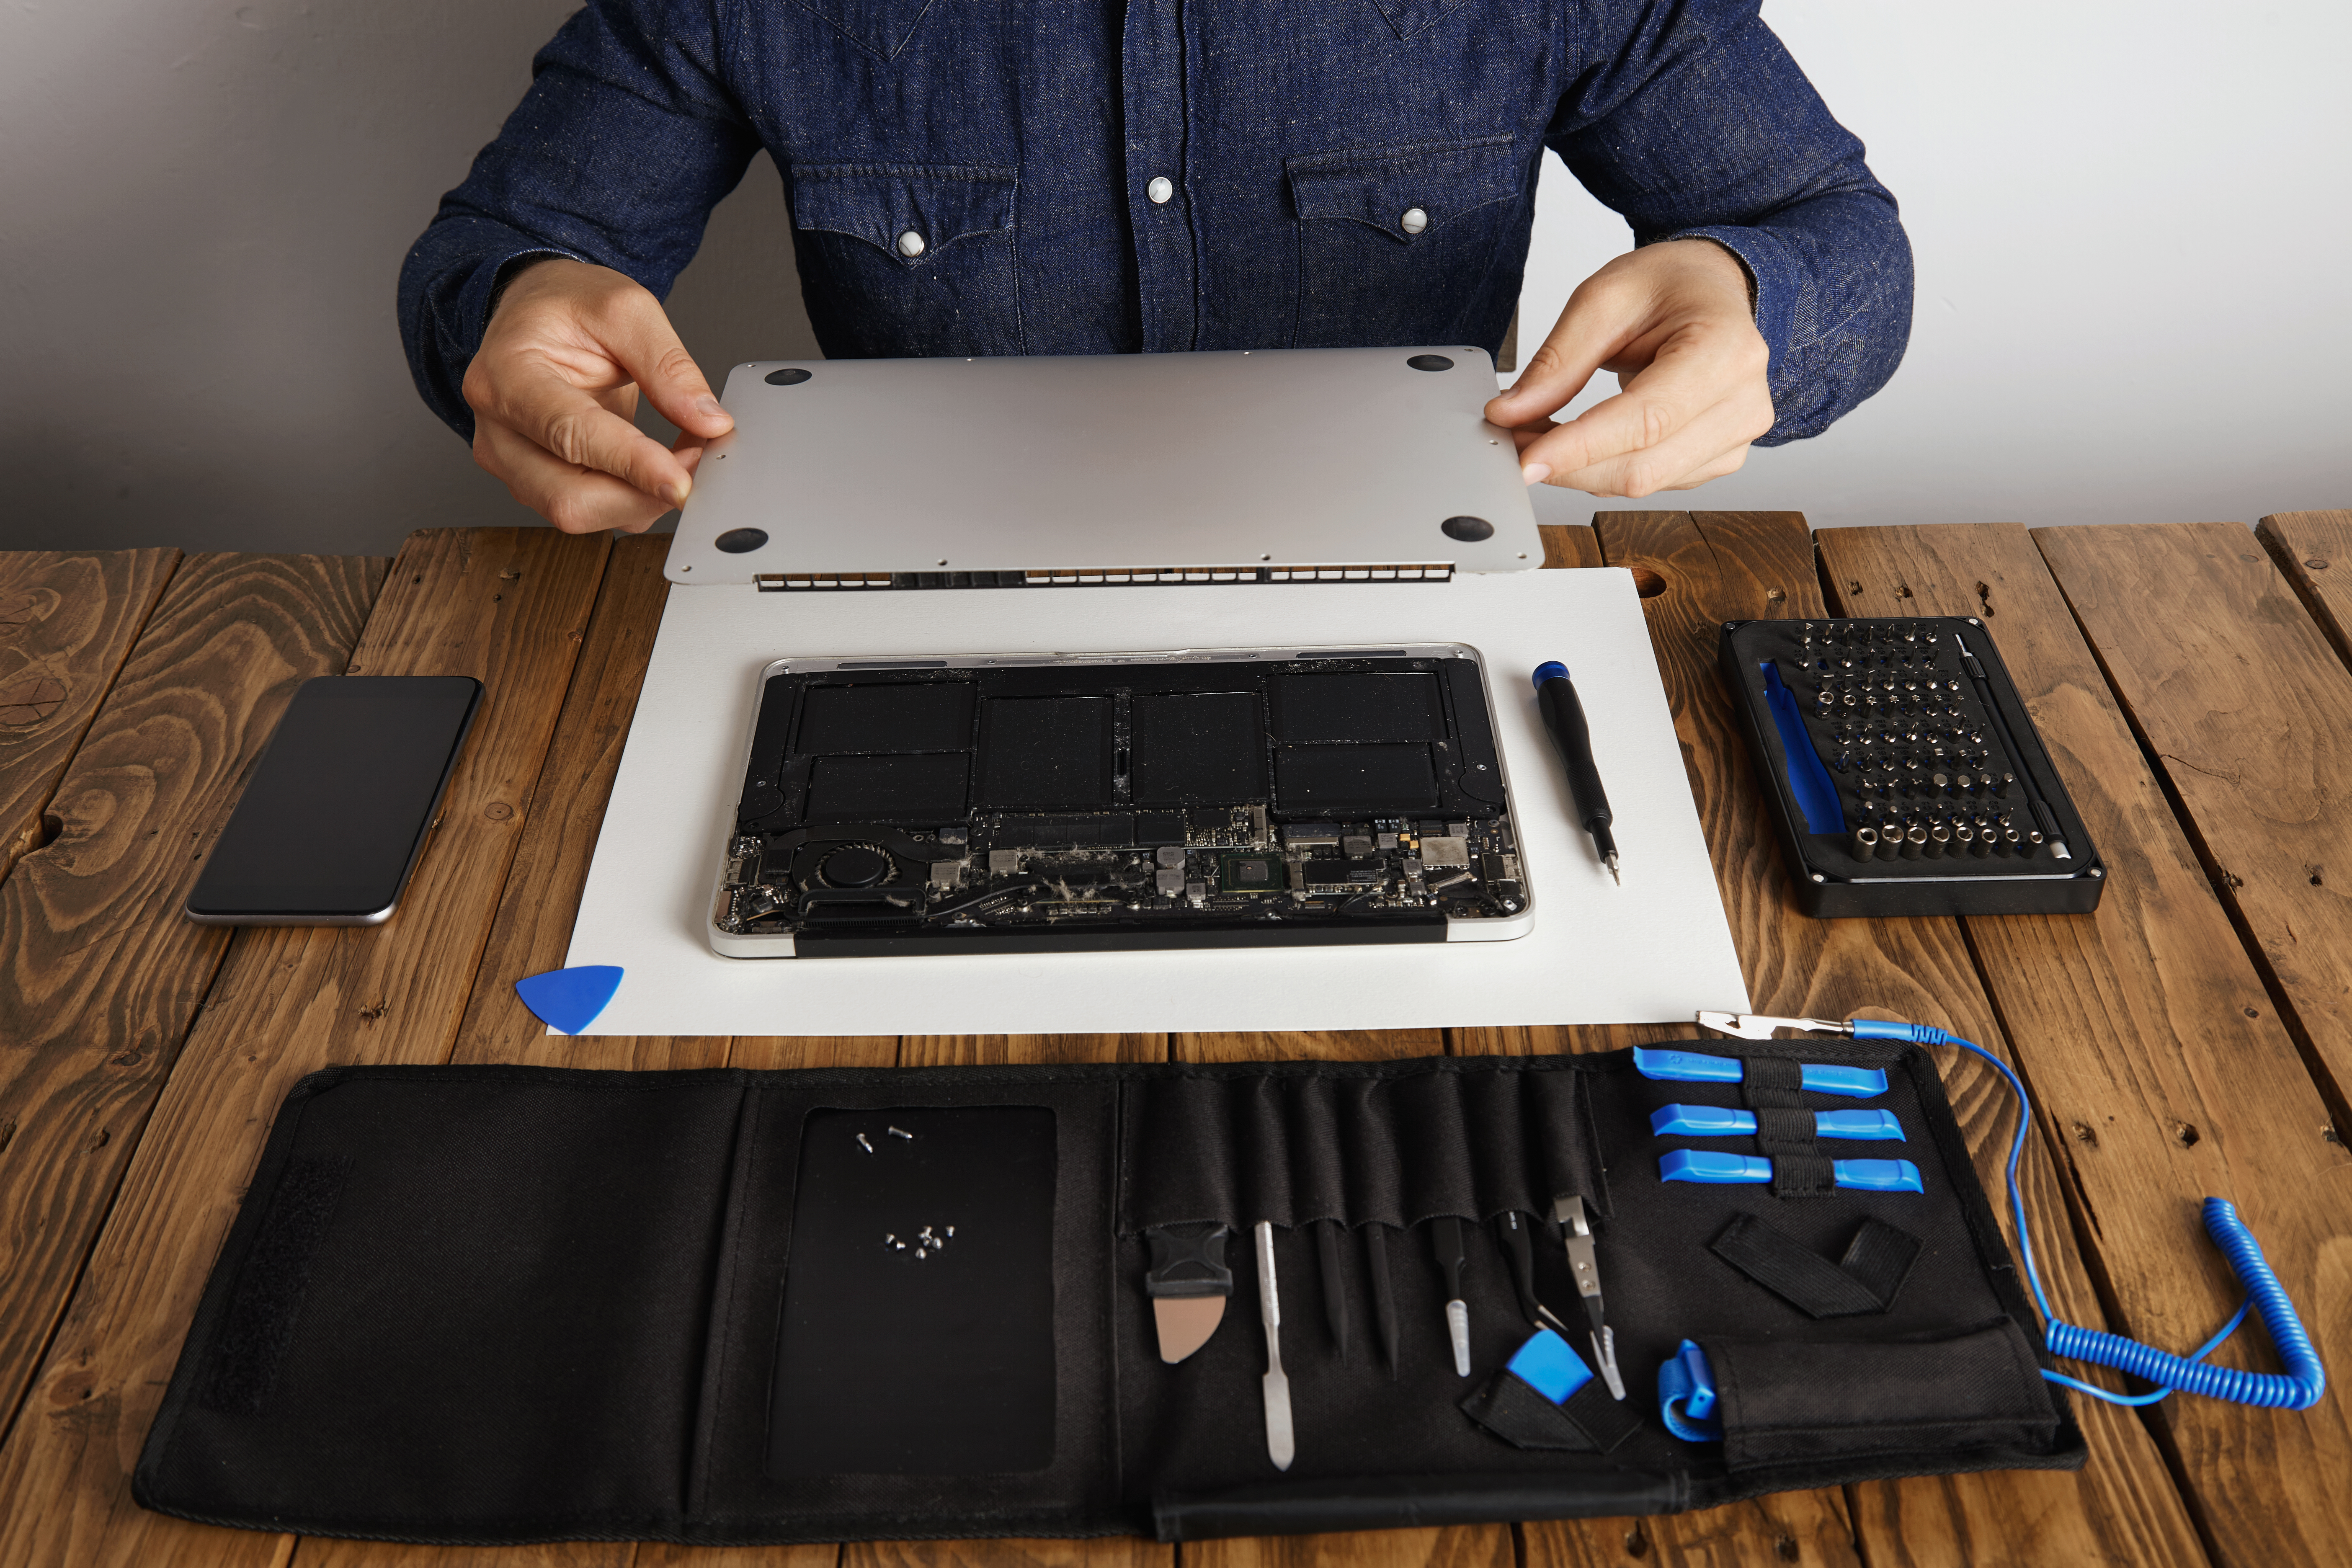 Repairing macbook